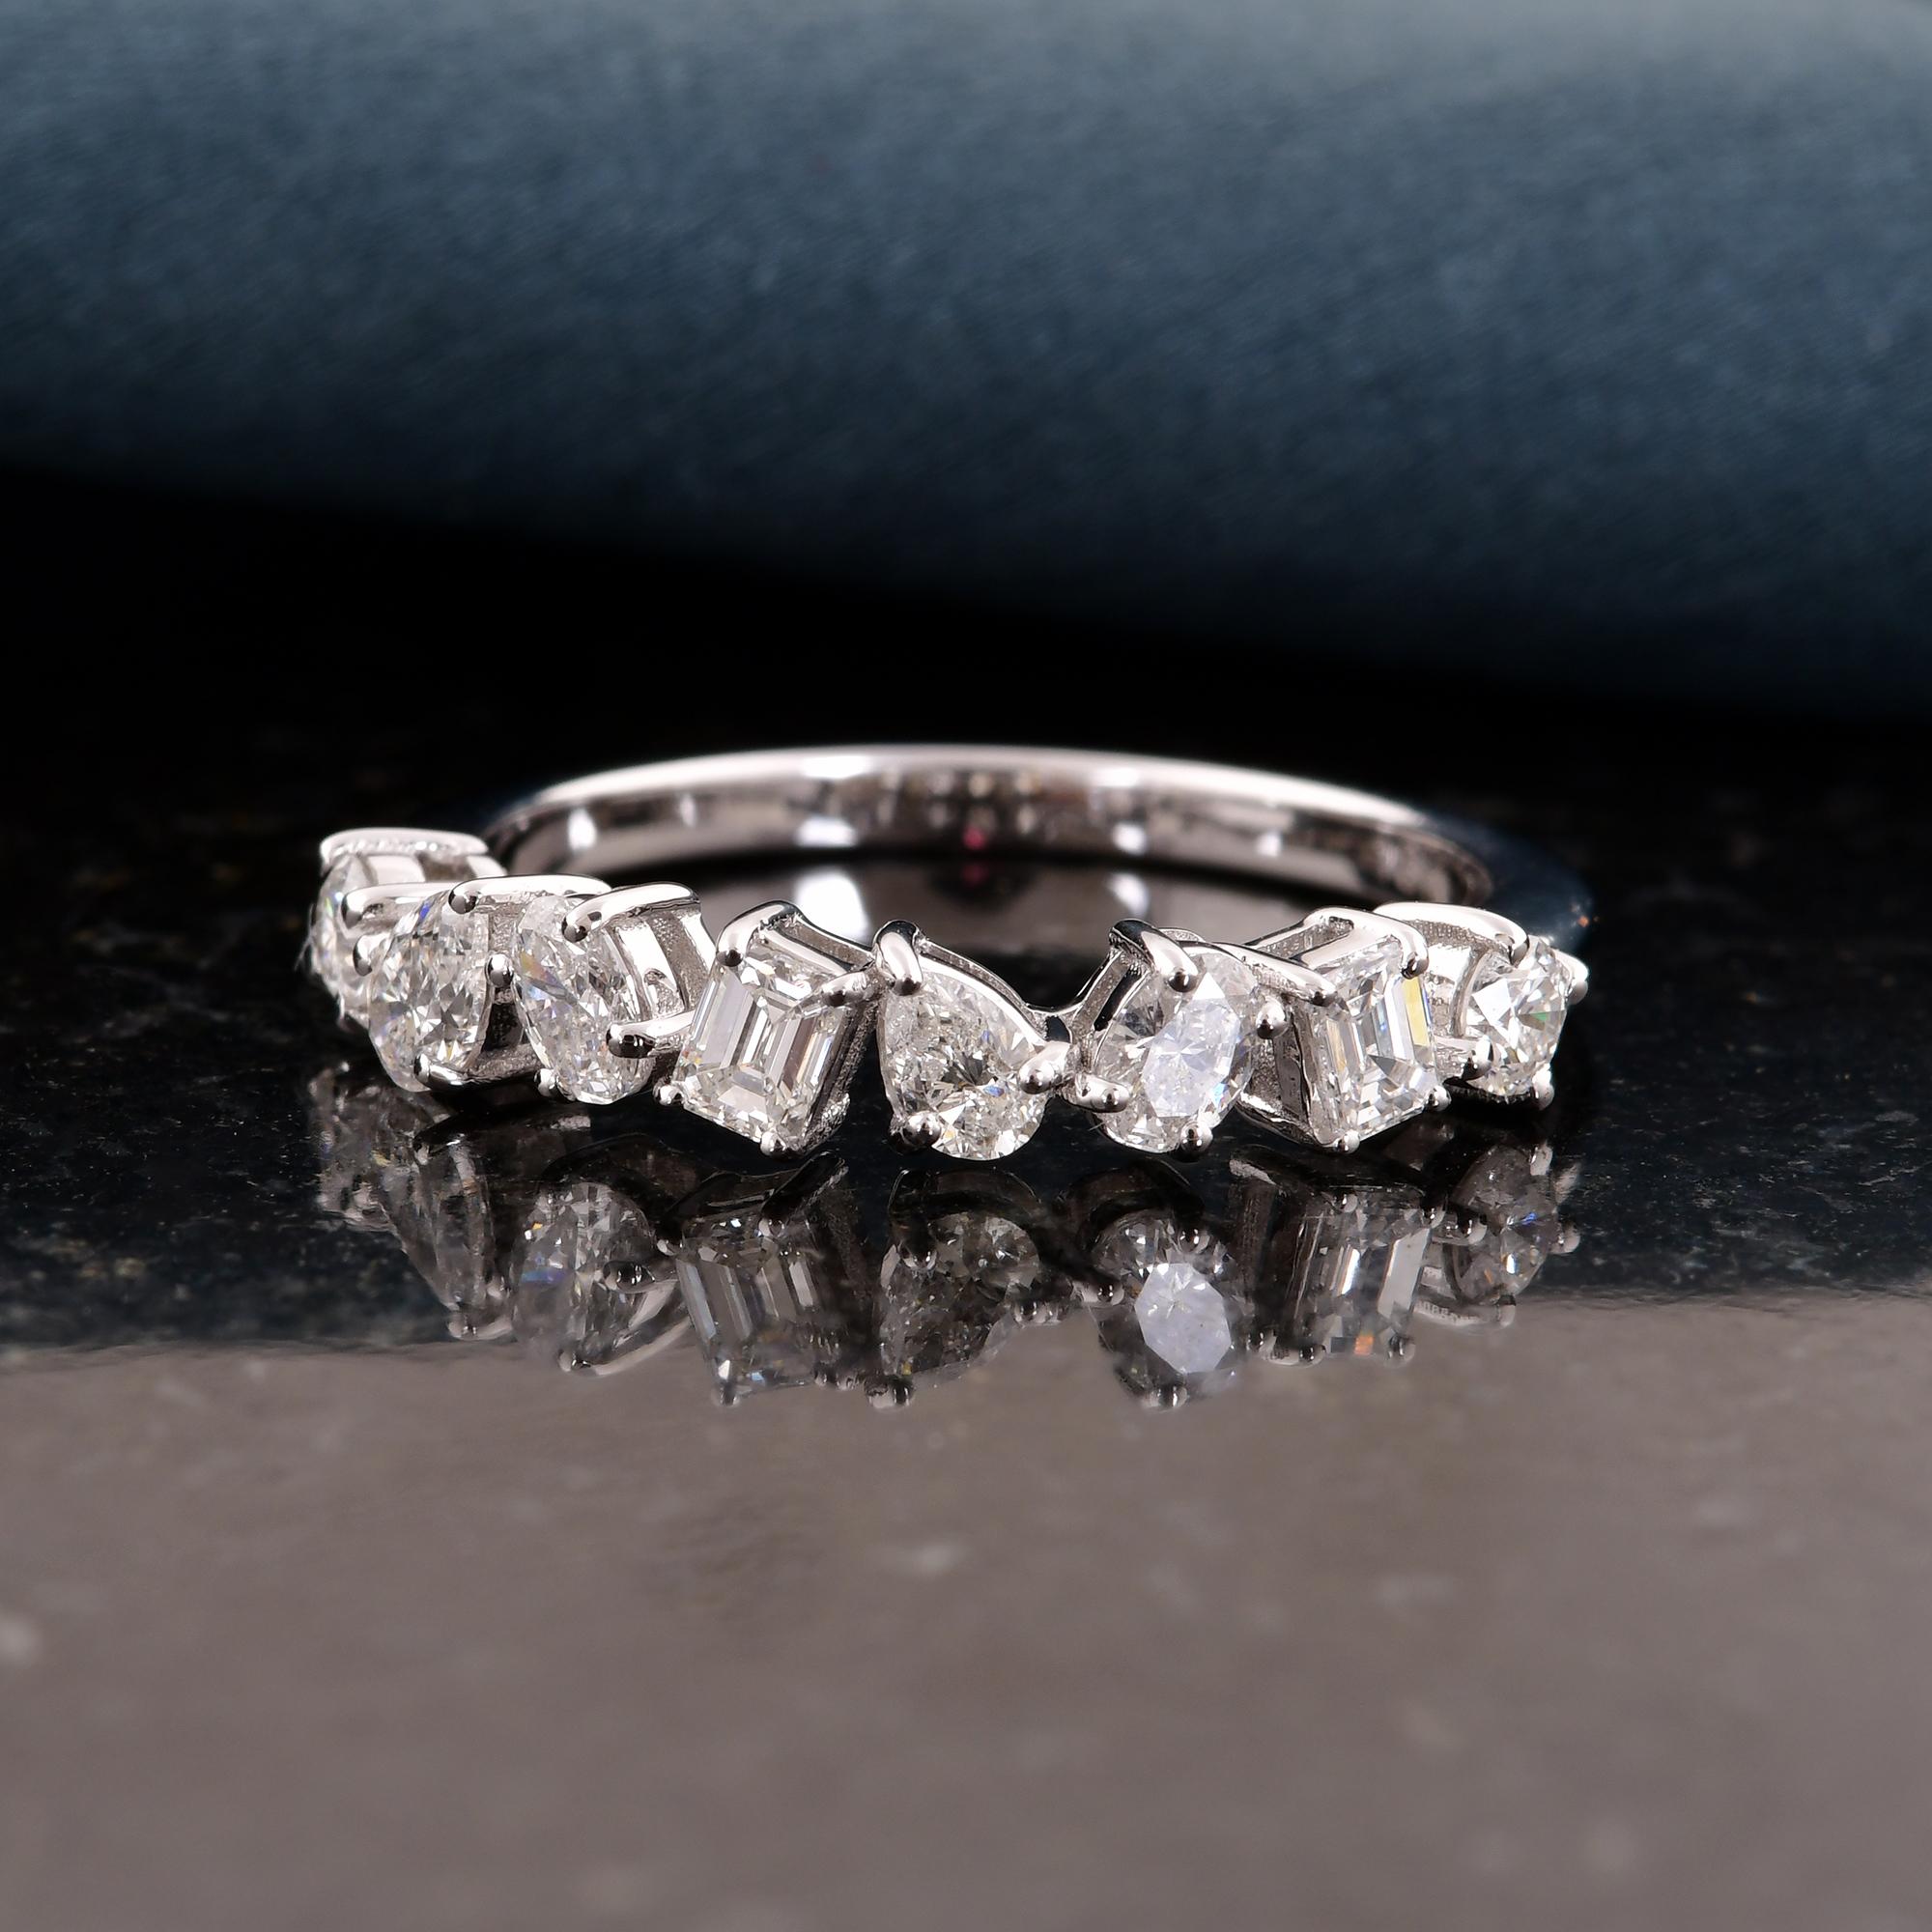 Das Besondere an diesem Ring ist sein einzigartiges Design mit Diamanten in mehreren Formen. Vom klassischen runden Brillanten über die elegante Birnenform bis hin zum bezaubernden Princess-Schliff verleiht jeder Diamant der Komposition seinen ganz